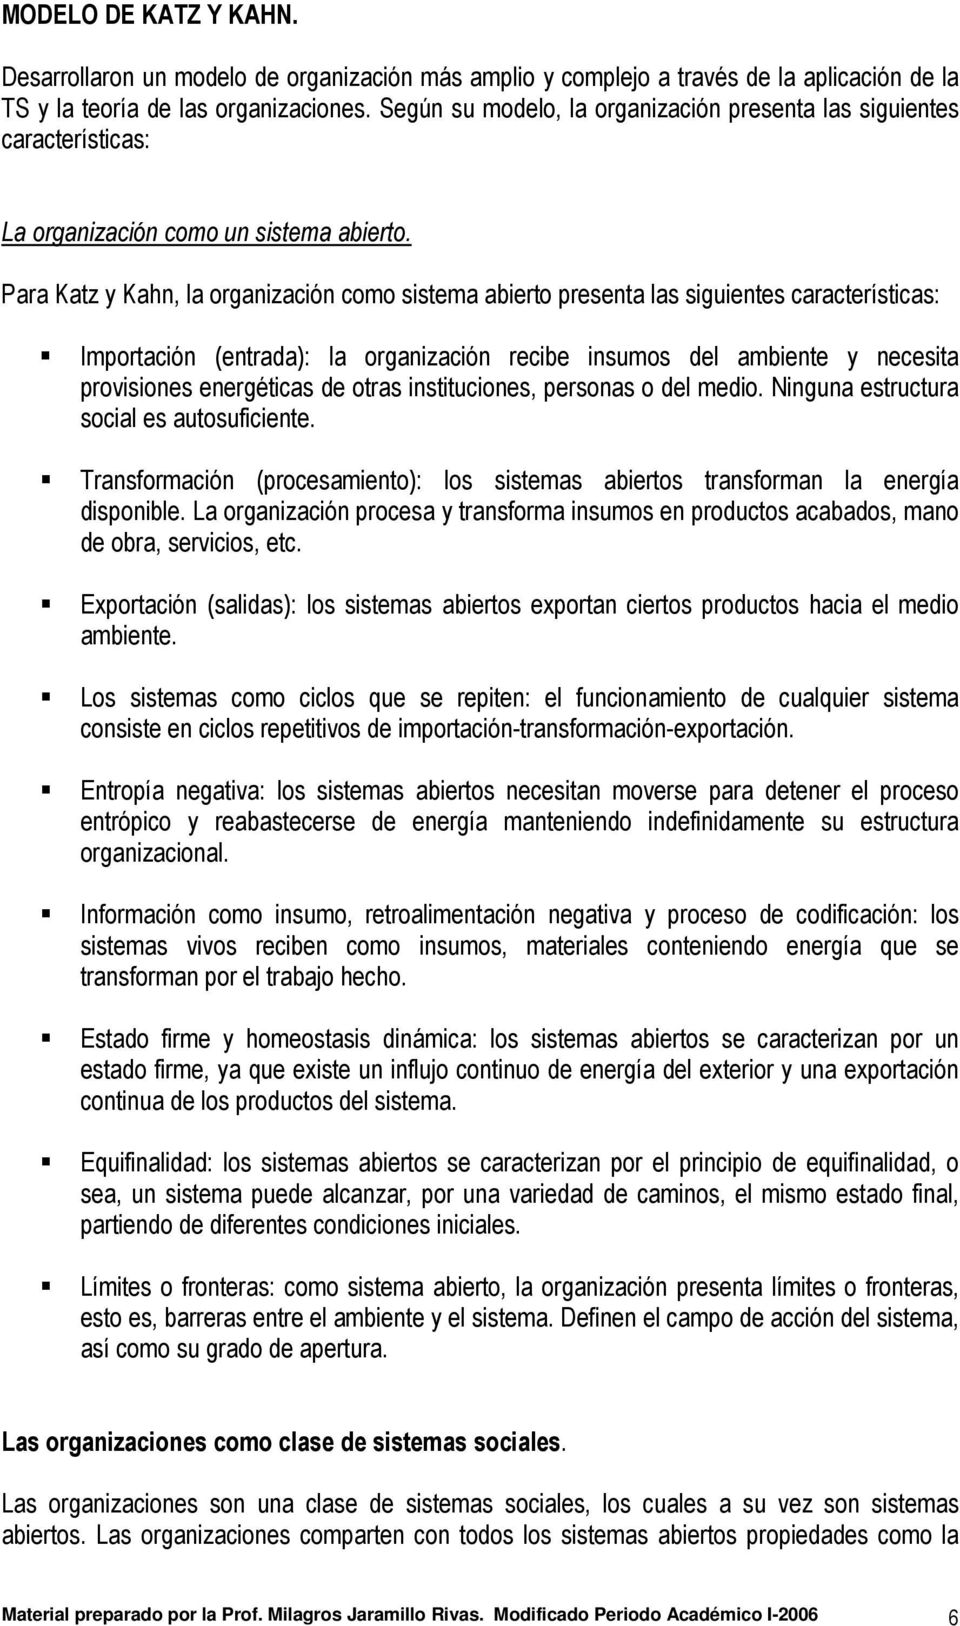 ENFOQUE SISTÉMICO DE LA ADMINISTRACION. TEORÍA DE SISTEMA - PDF Free  Download